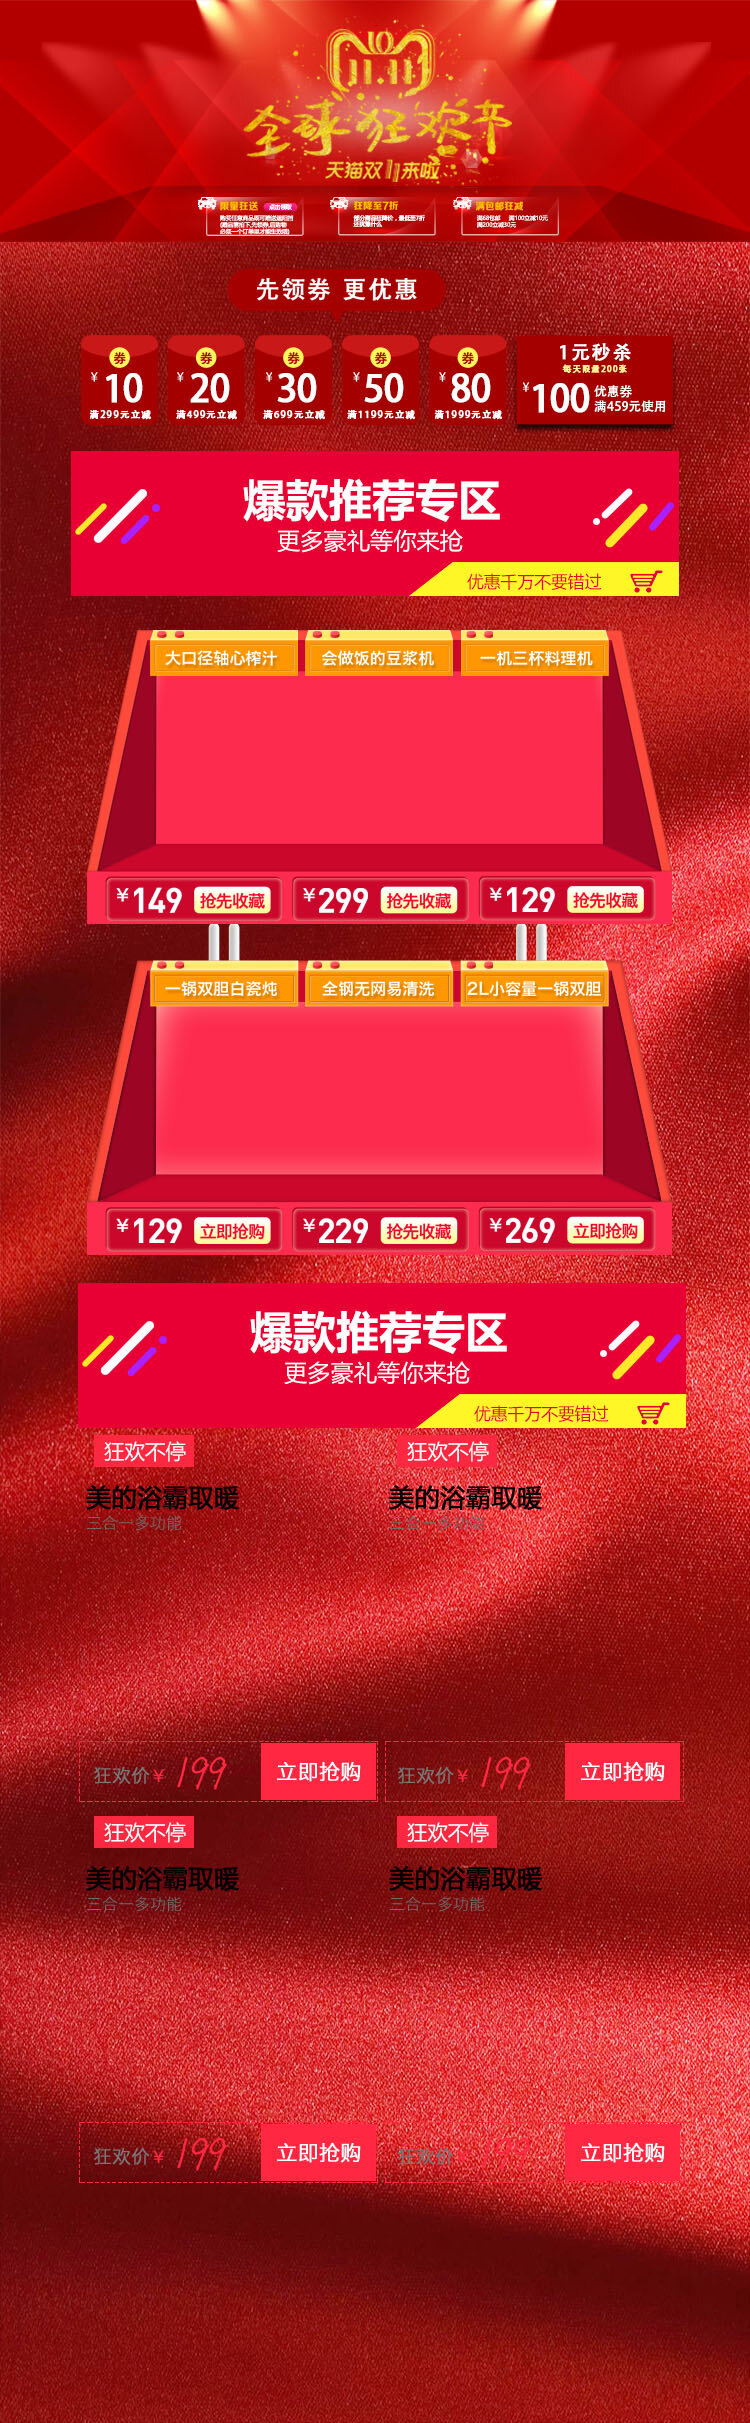 双十 一红 色系 狂欢 电商 首页 模板 双十一 红色 天猫 淘宝 京东 购物 减价